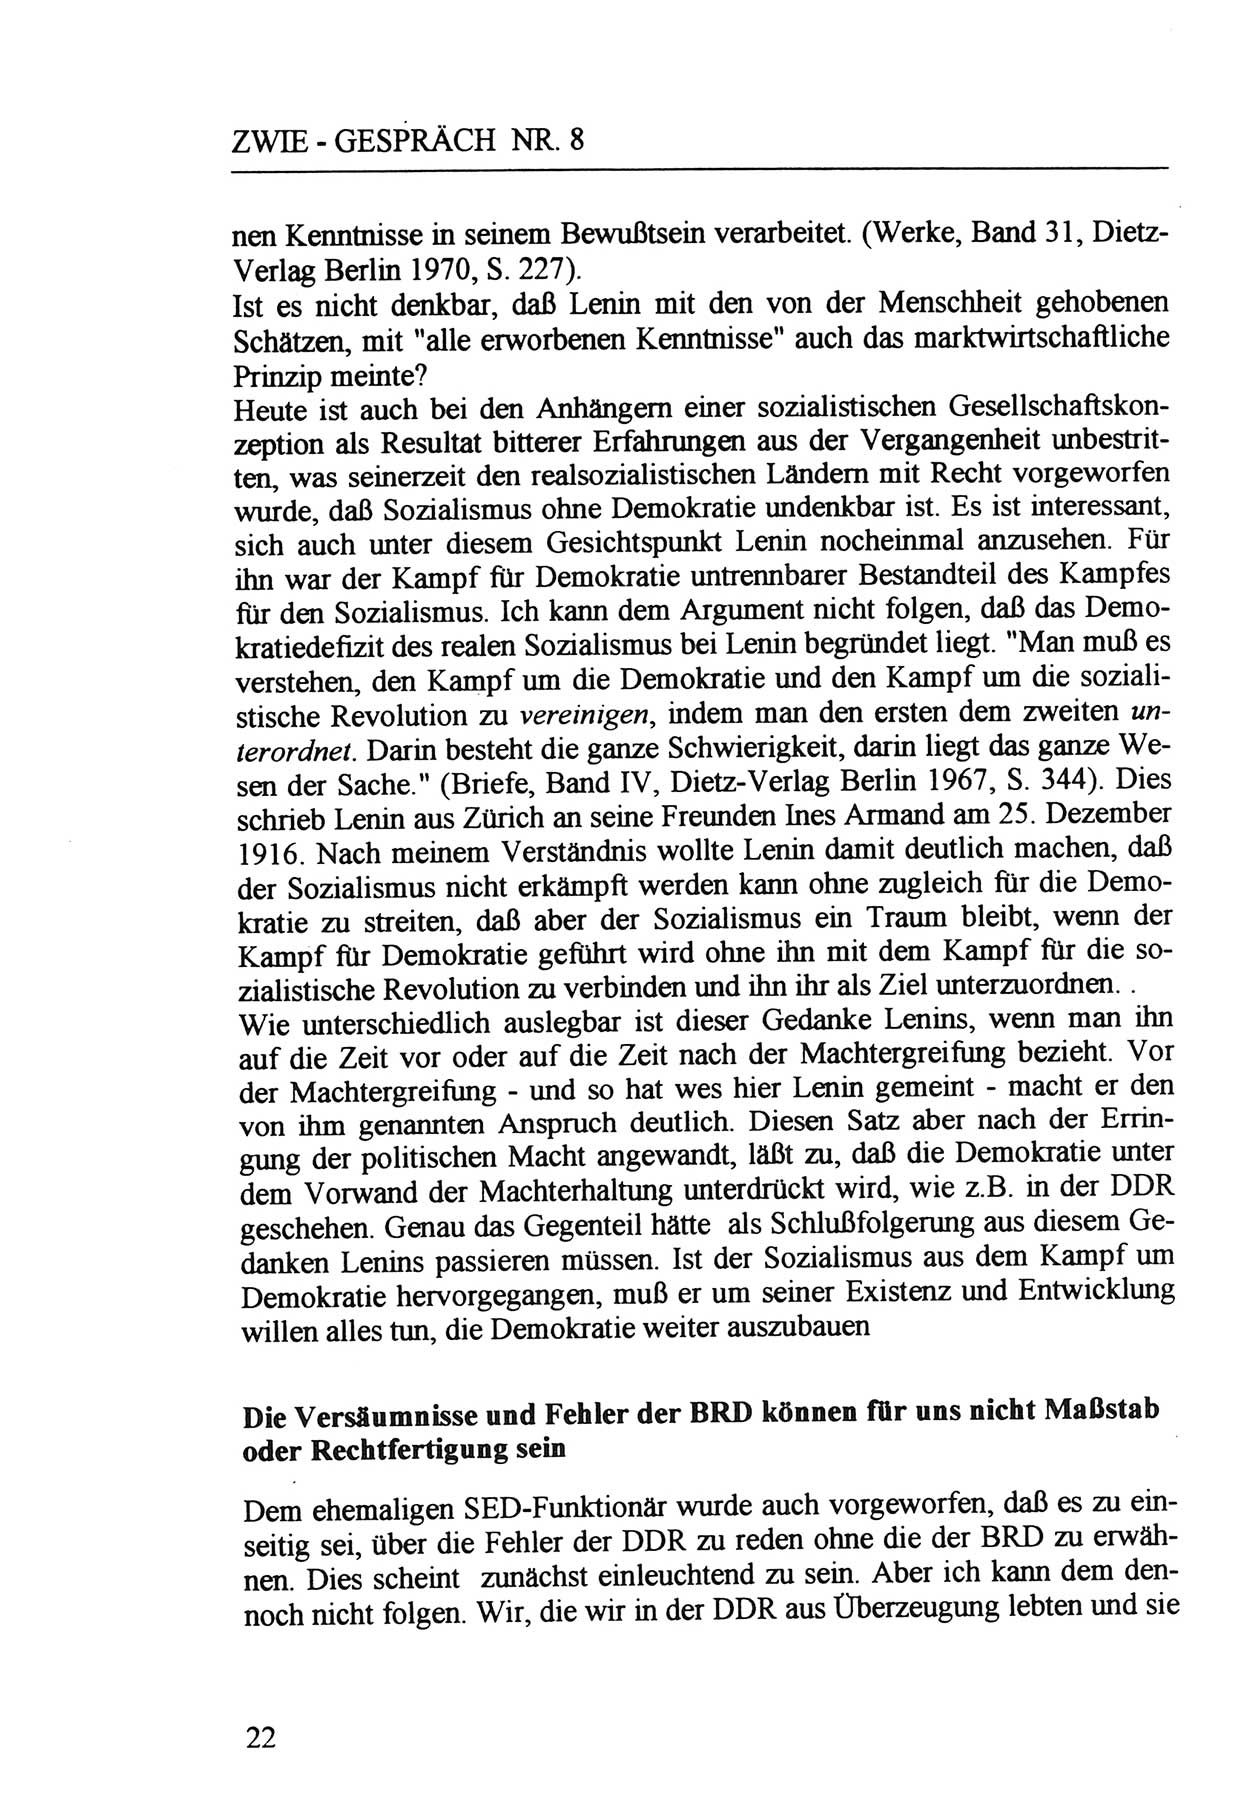 Zwie-Gespräch, Beiträge zur Aufarbeitung der Staatssicherheits-Vergangenheit [Deutsche Demokratische Republik (DDR)], Ausgabe Nr. 8, Berlin 1992, Seite 22 (Zwie-Gespr. Ausg. 8 1992, S. 22)